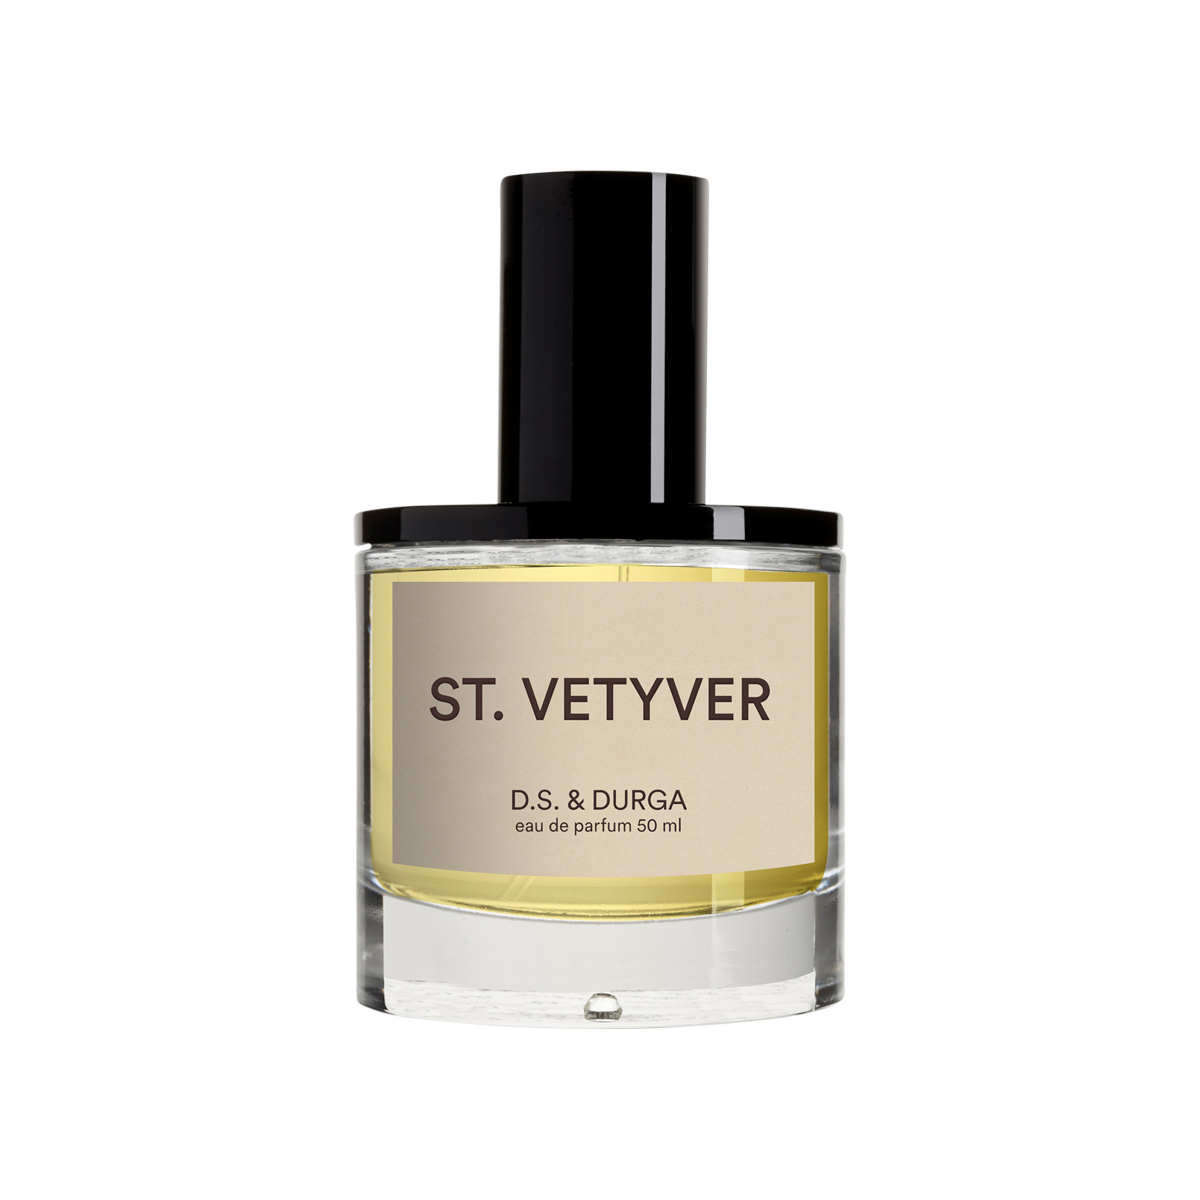 D.S. & DURGA - St. Vetyver Eau de Parfum